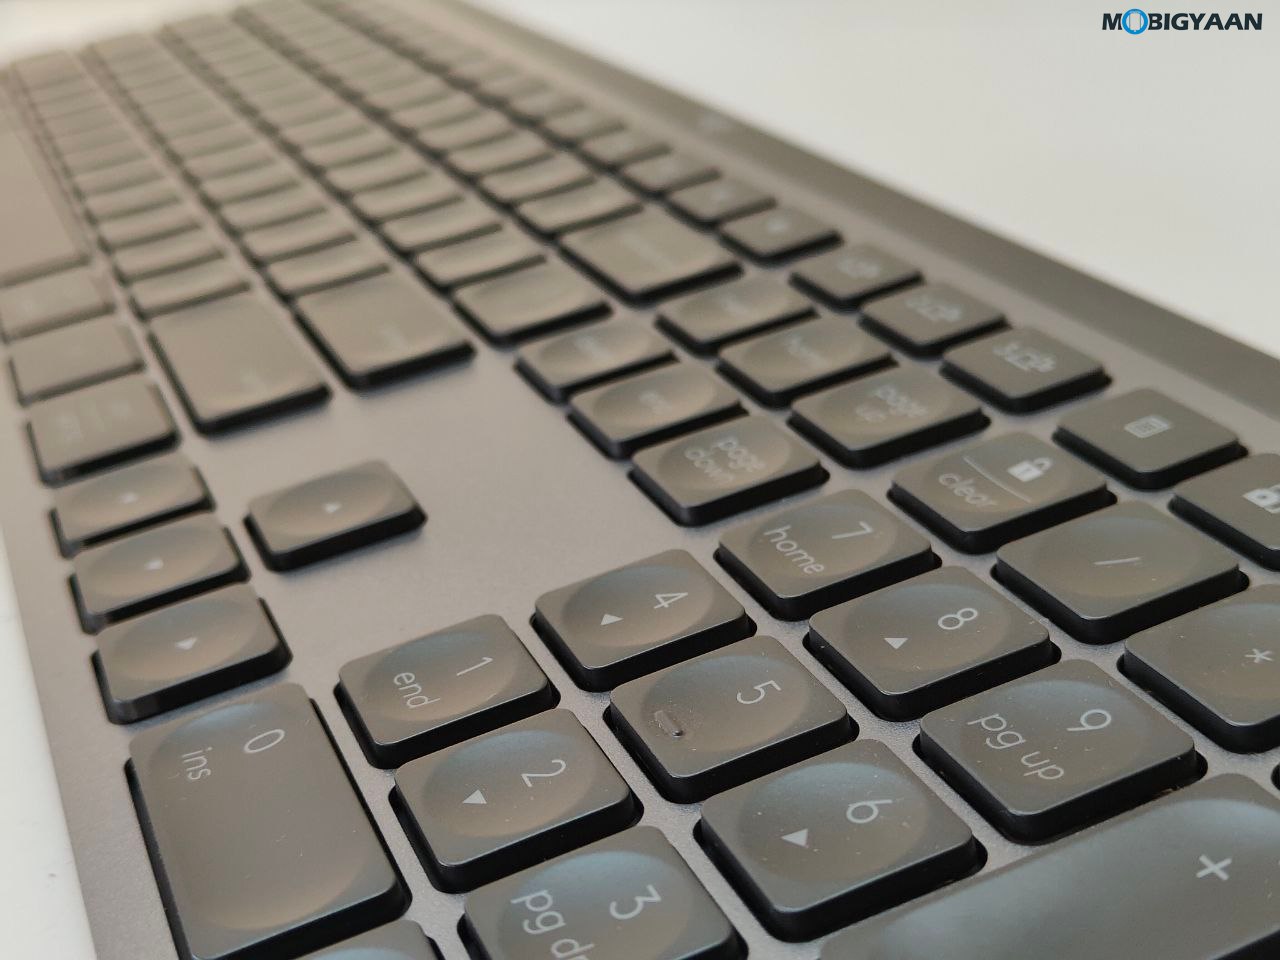 Logitech MX Keys S Review Wireless Keyboard Design Build Quality 14